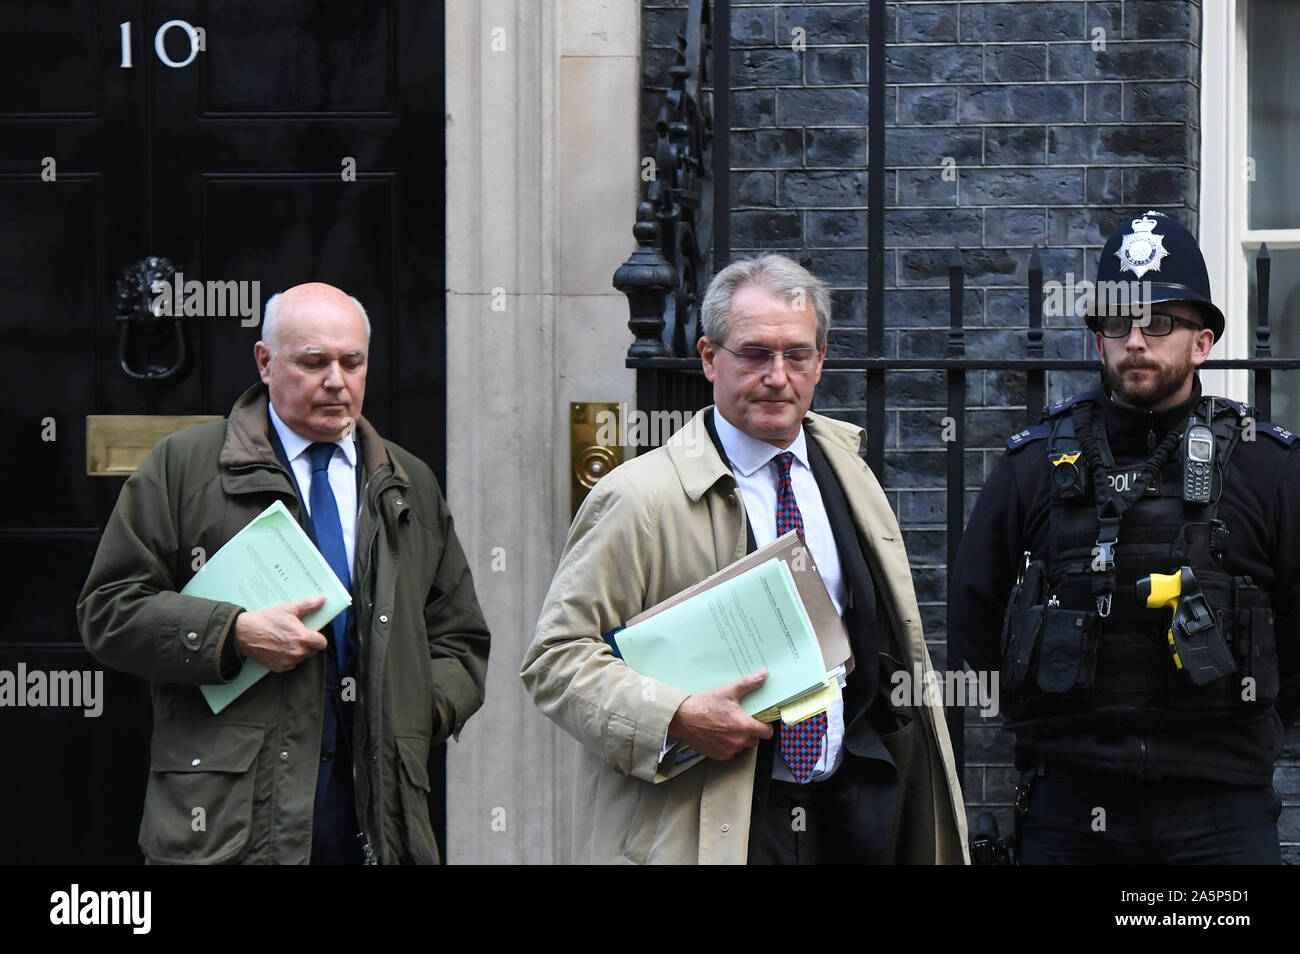 Iain Duncan Smith und Owen Paterson (rechts) verlassen die Downing Street, London, nach der Teilnahme an einer Sitzung. PA-Foto. Bild Datum: Dienstag, 22. Oktober 2019. Siehe PA Geschichte Politik Brexit. Foto: Stefan Rousseau/PA-Kabel Stockfoto